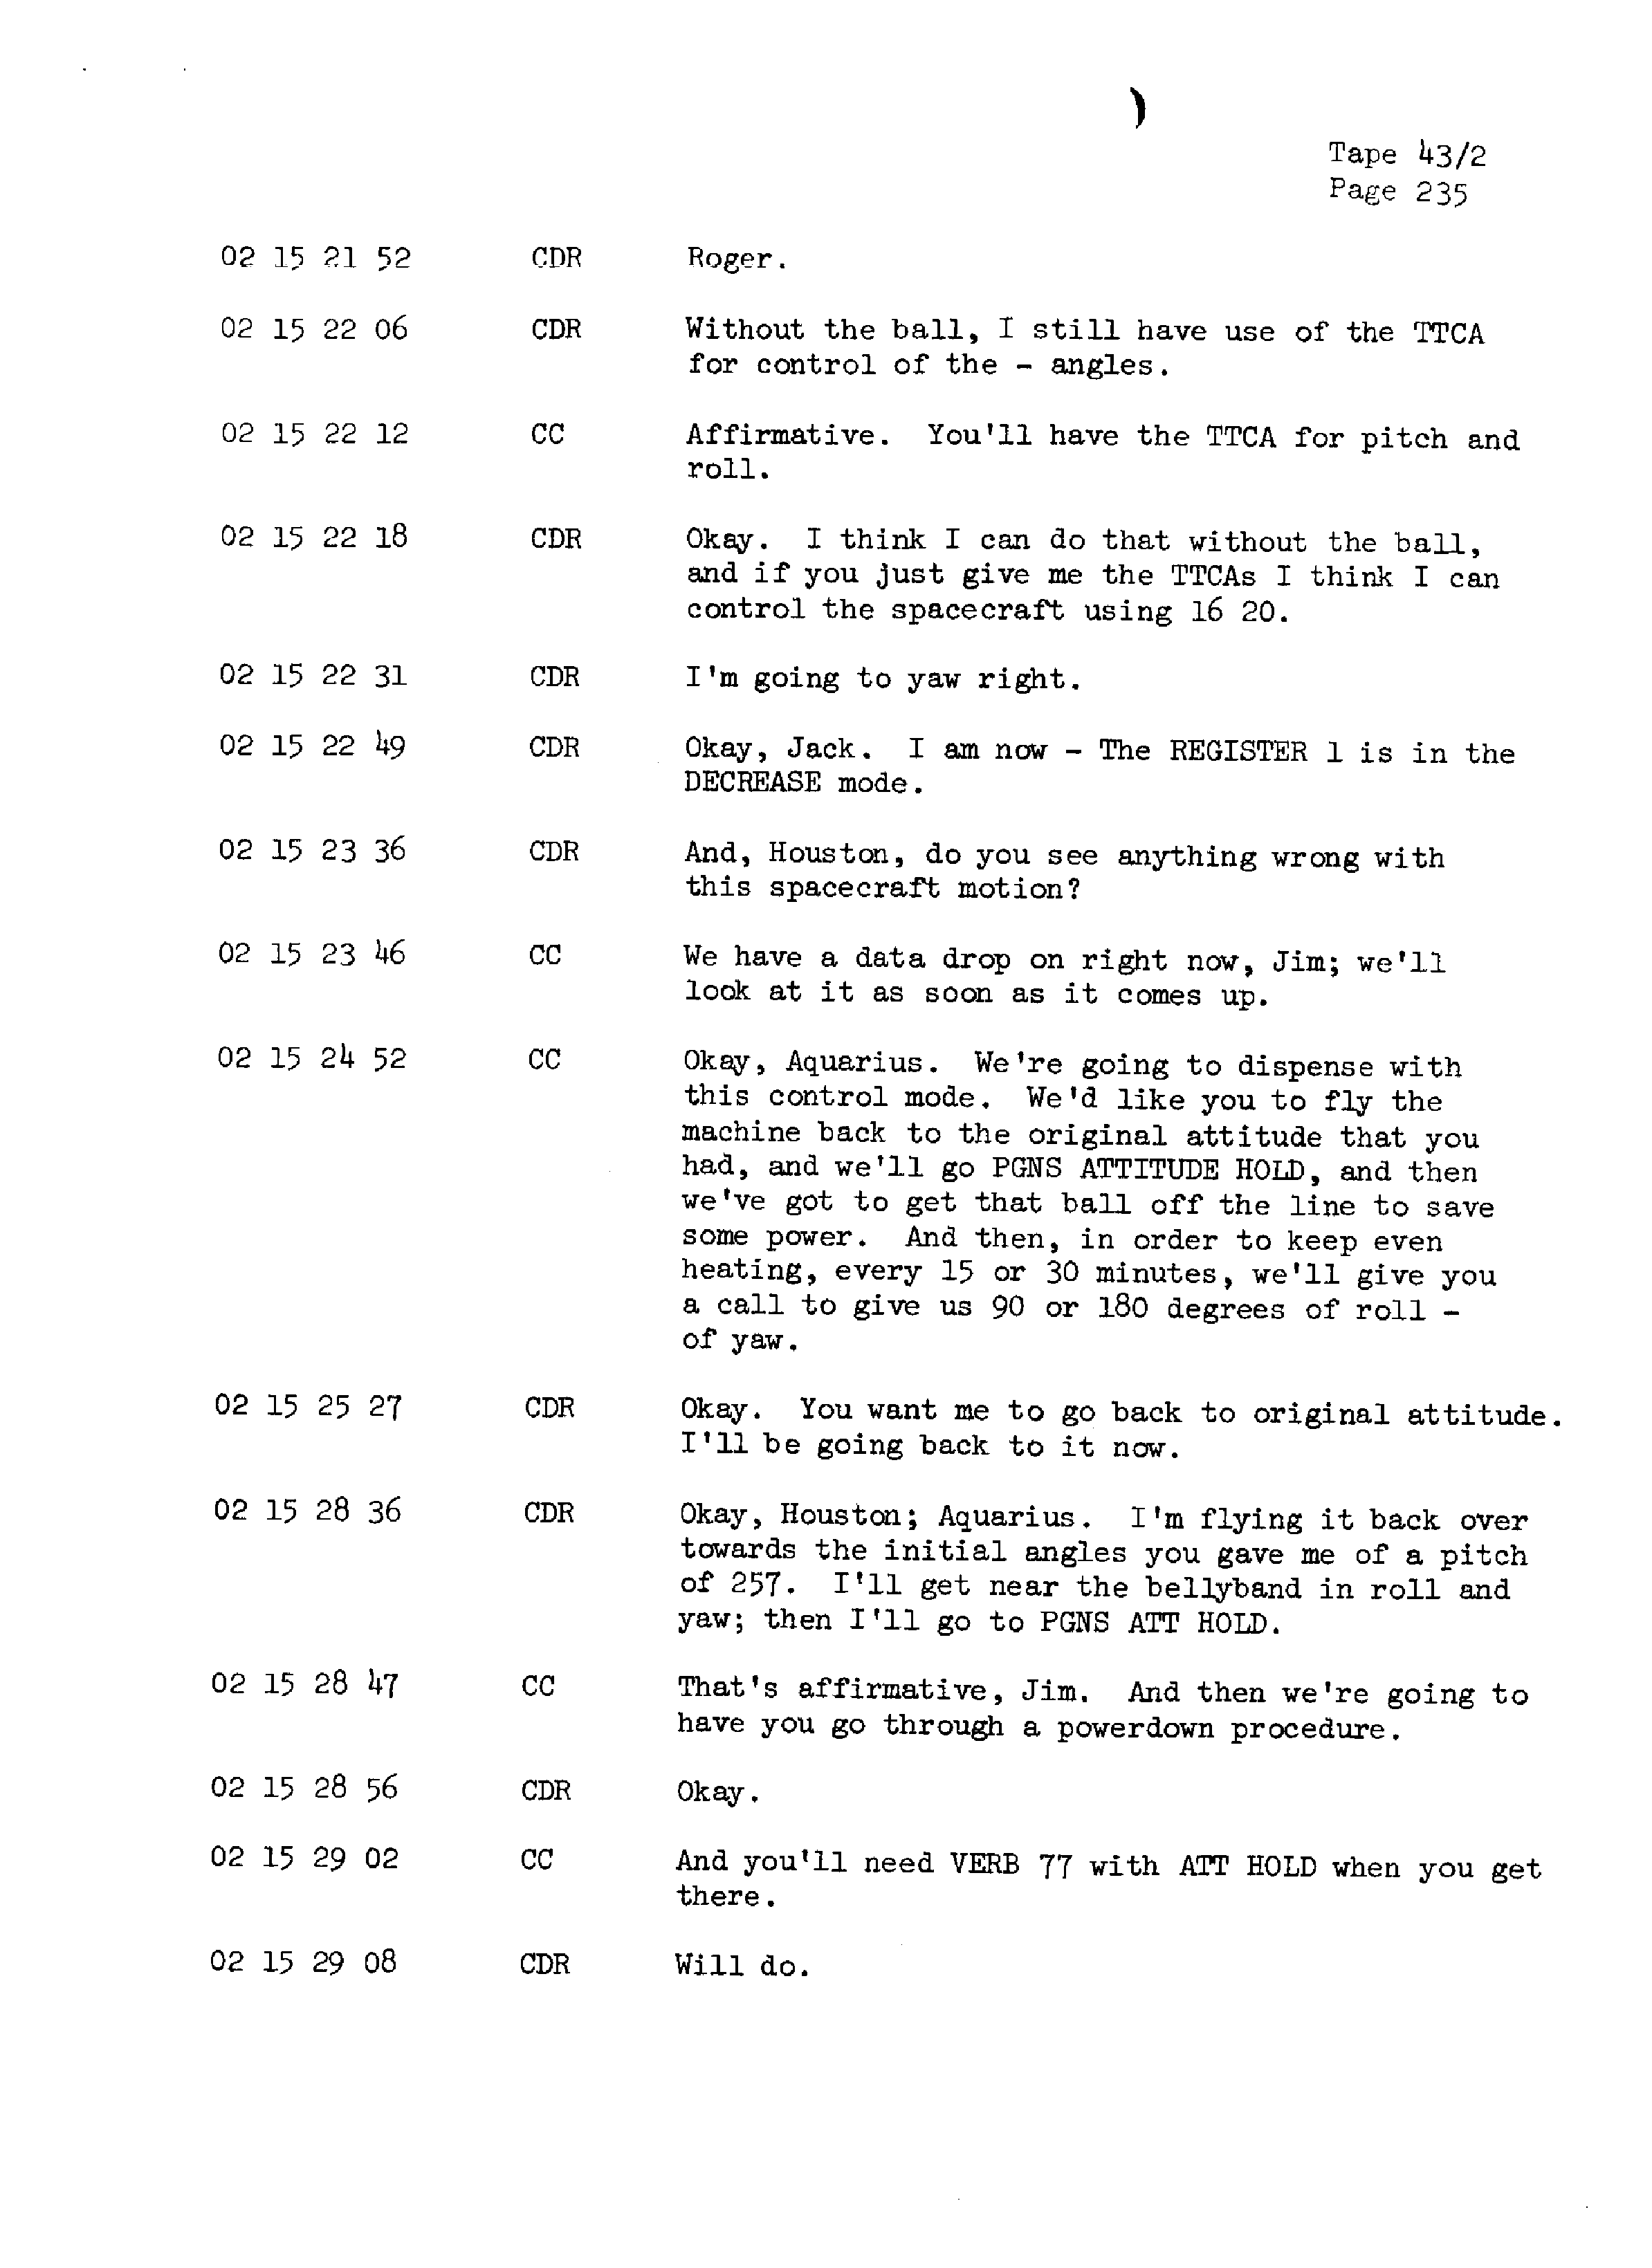 Page 242 of Apollo 13’s original transcript